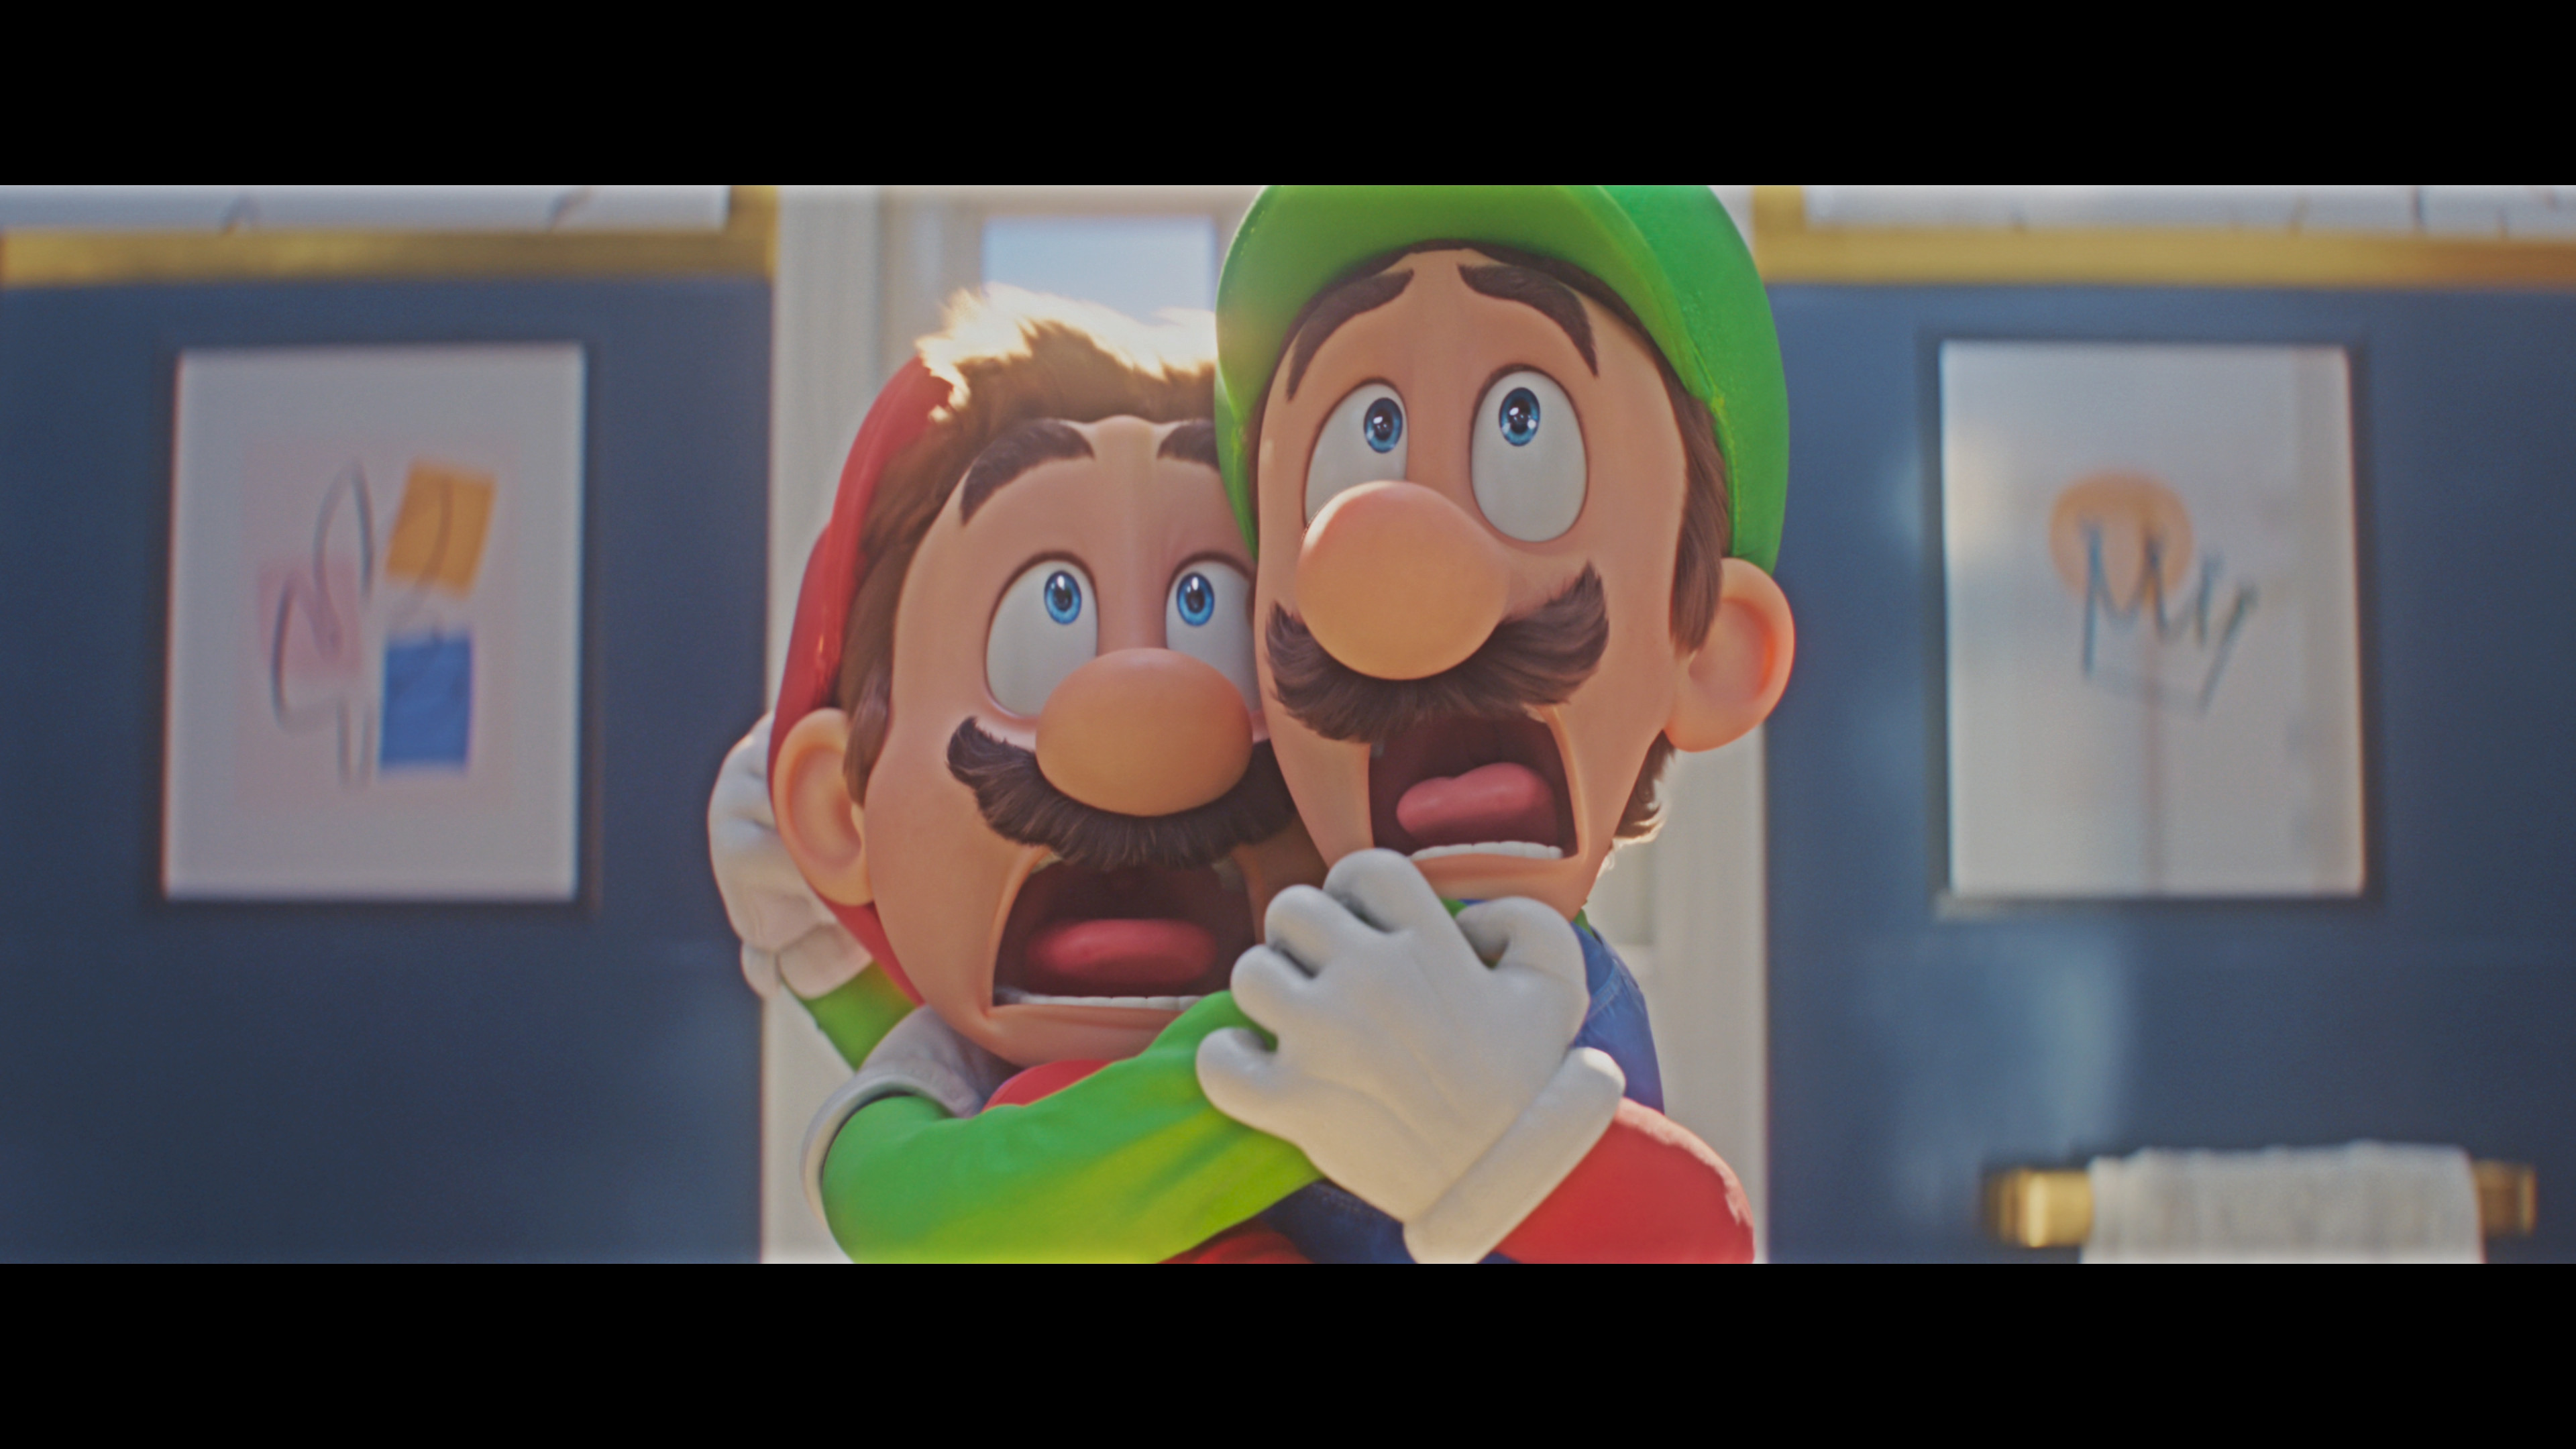 Der Super Mario Bros. Film [Blu-ray] online kaufen